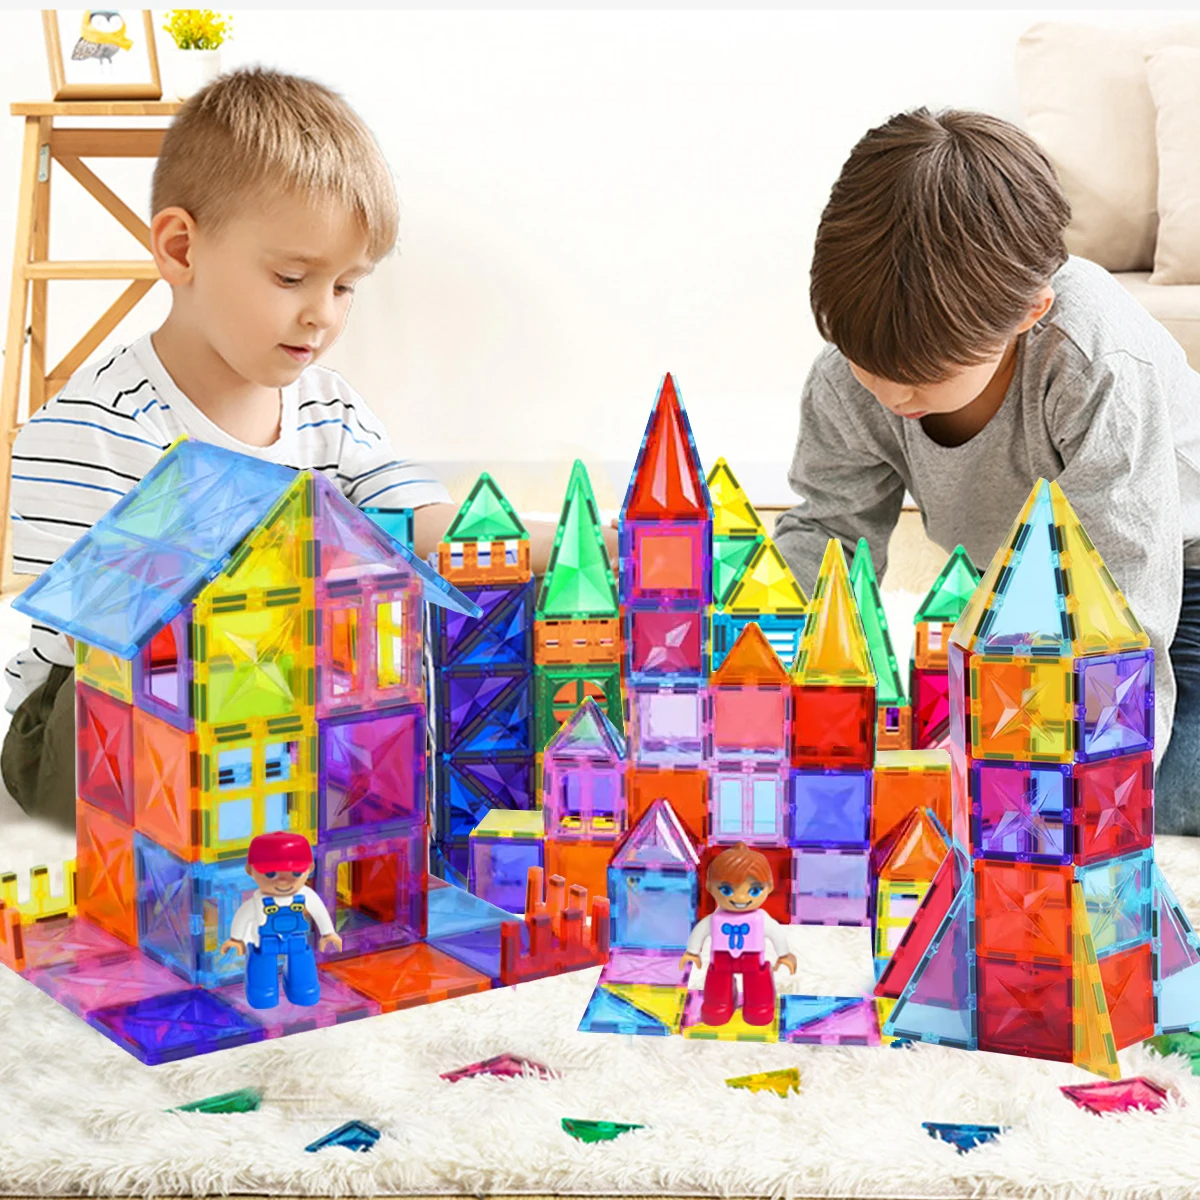 Jeu de construction magnétique multicolore de 41 pièces en plastique avec deux enfants jouant